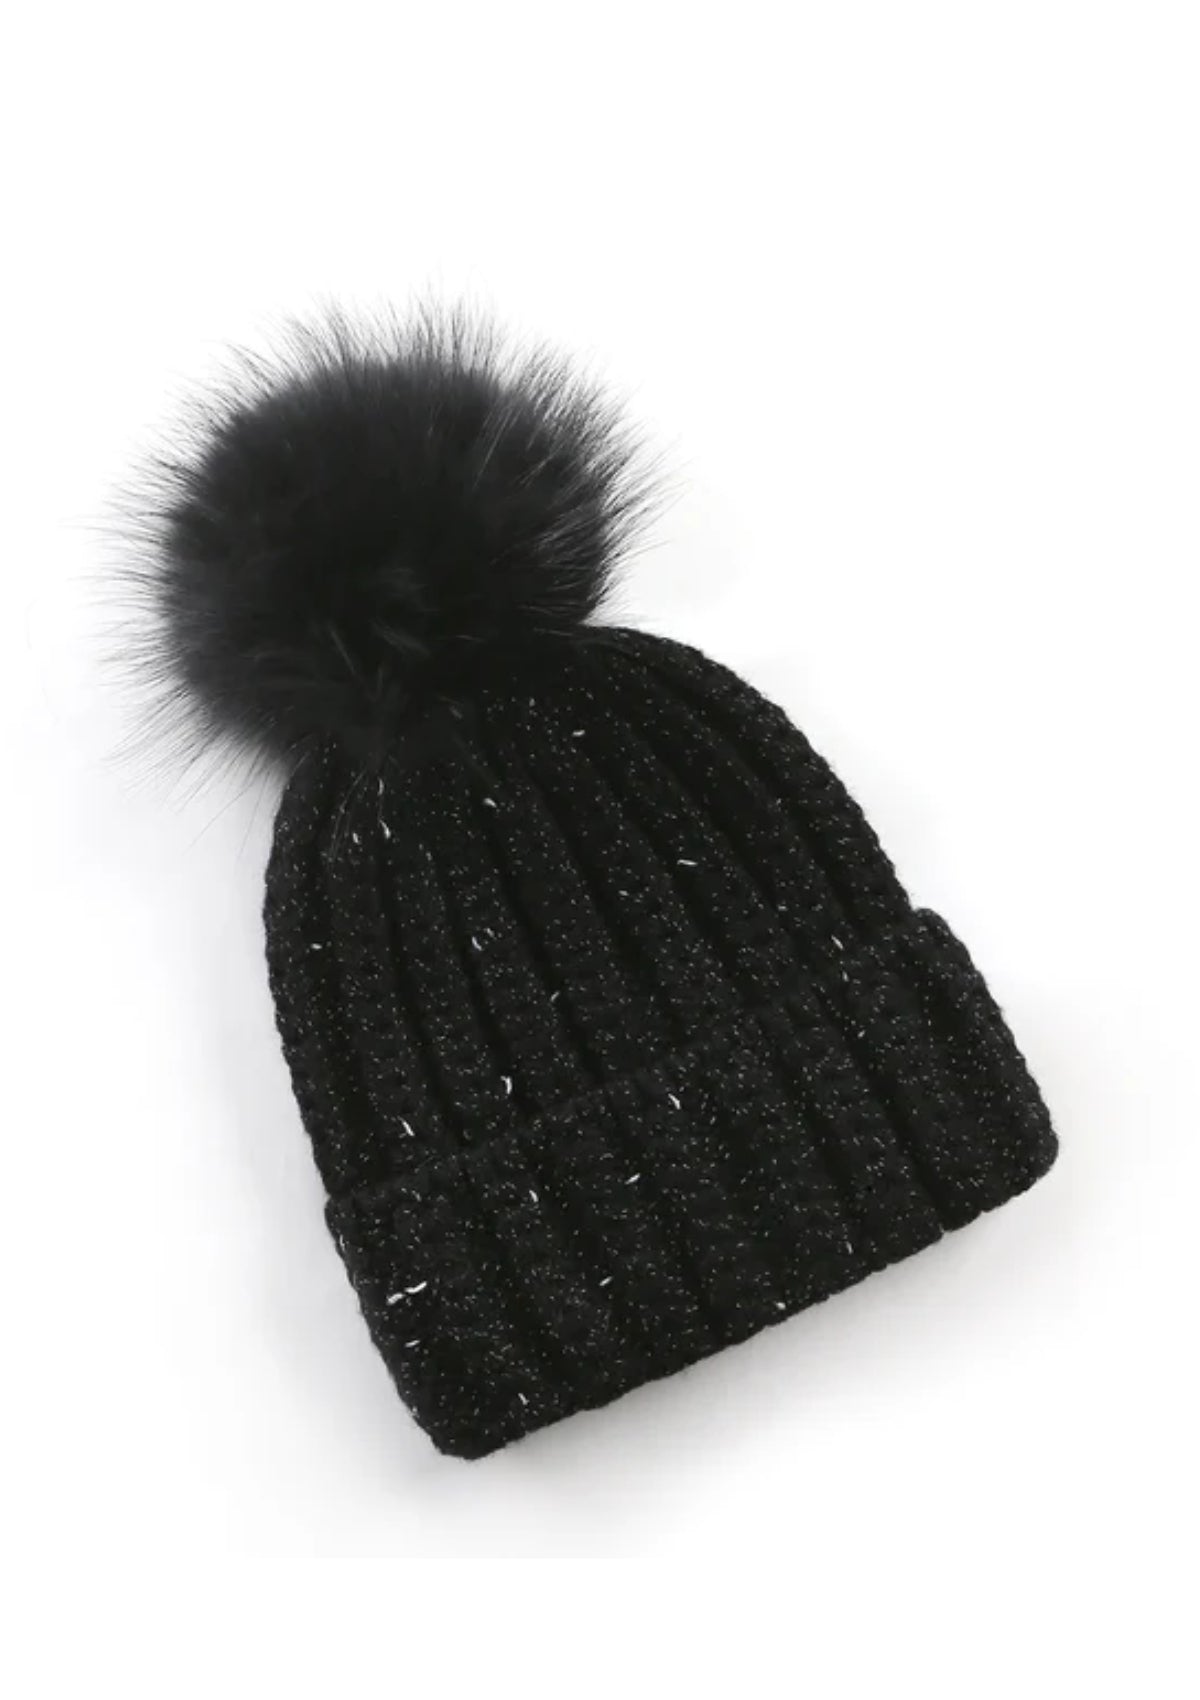 Real Fur Black "The Colorado" Hat